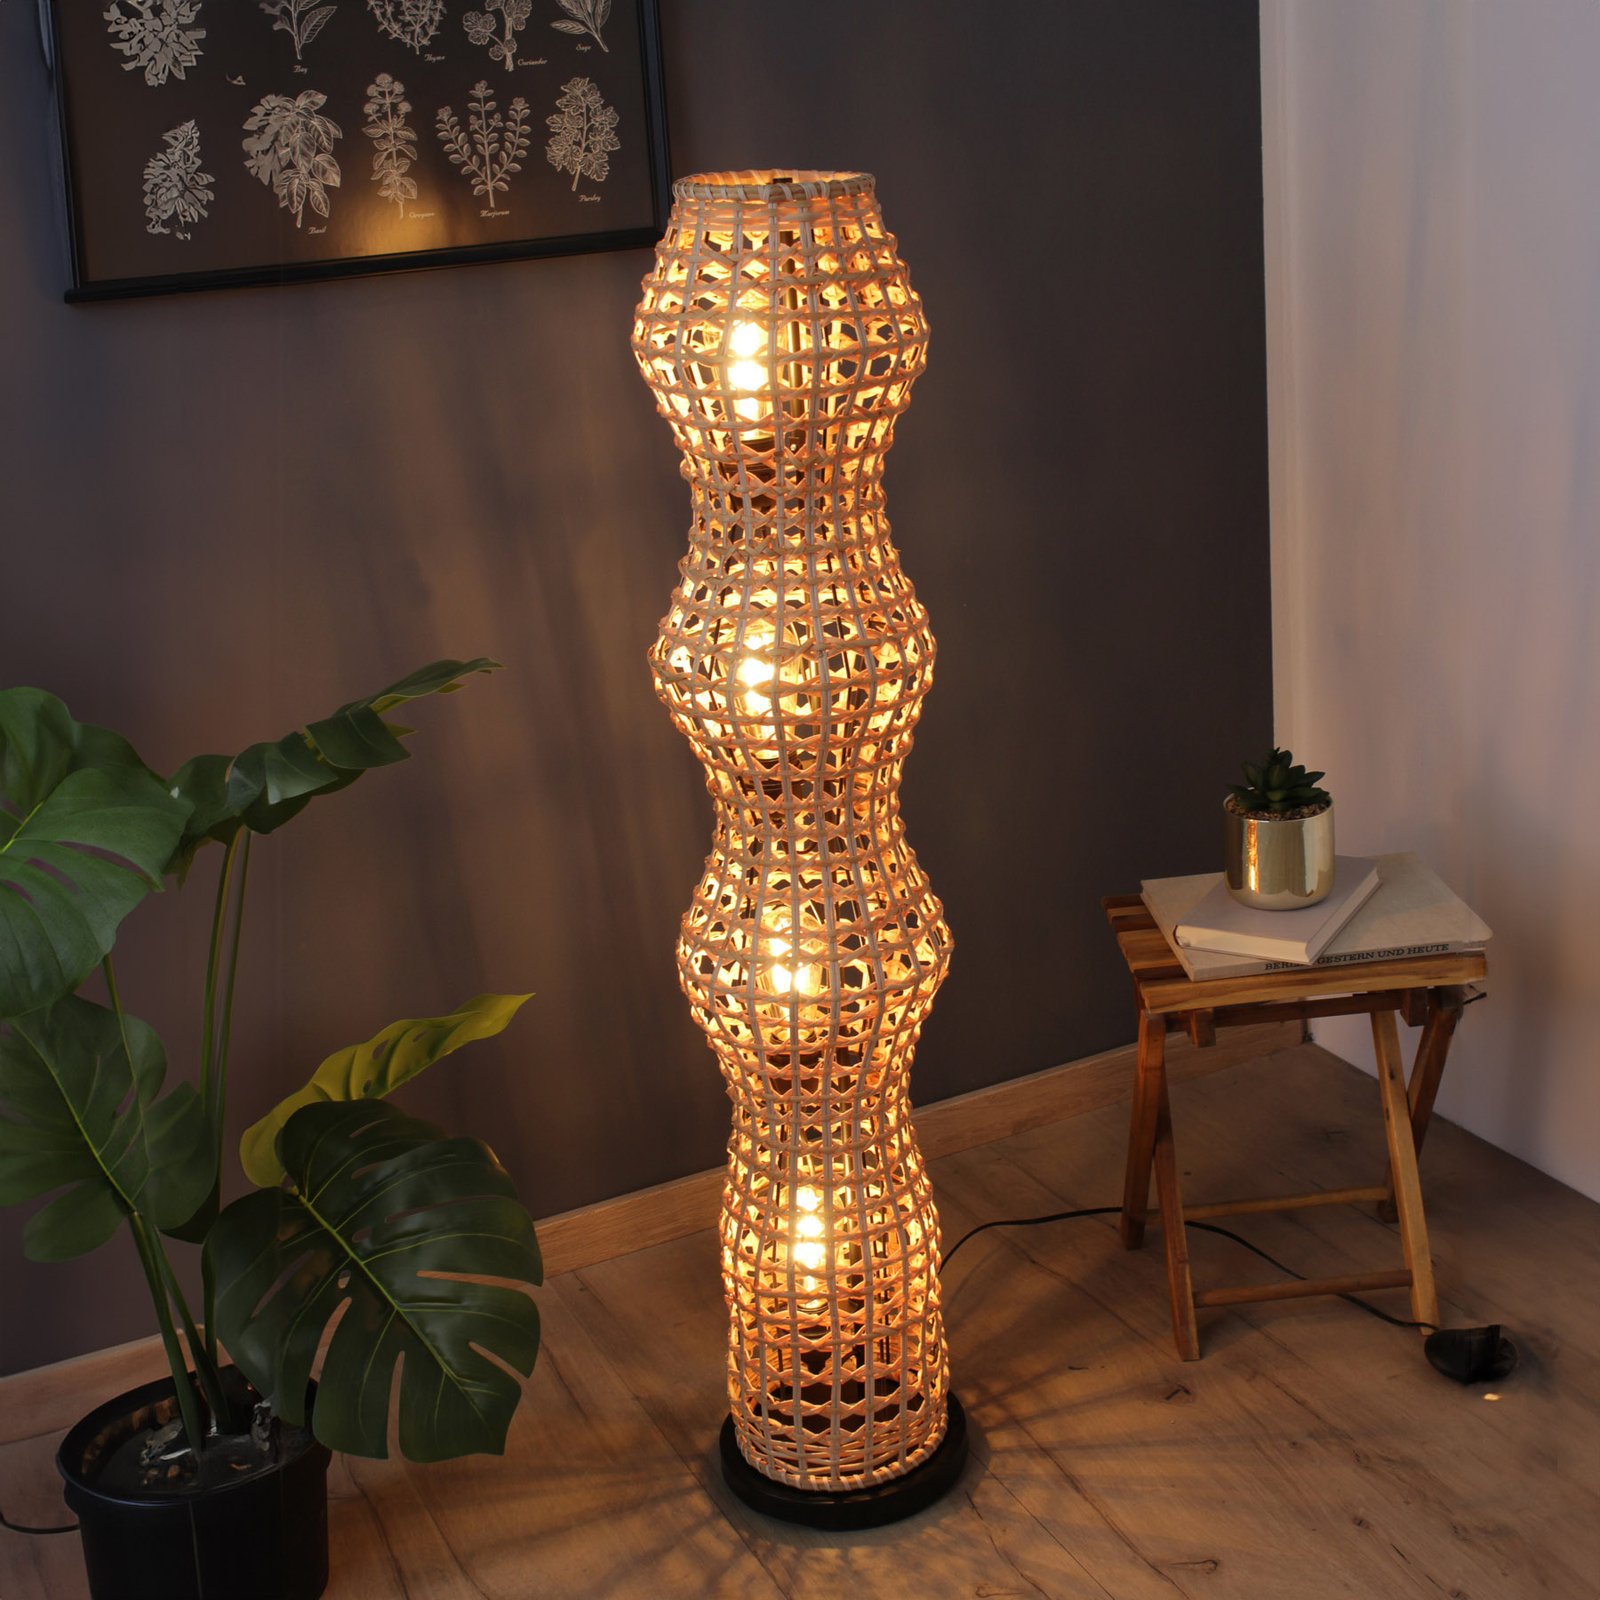 Capella floor lamp, height 110 cm